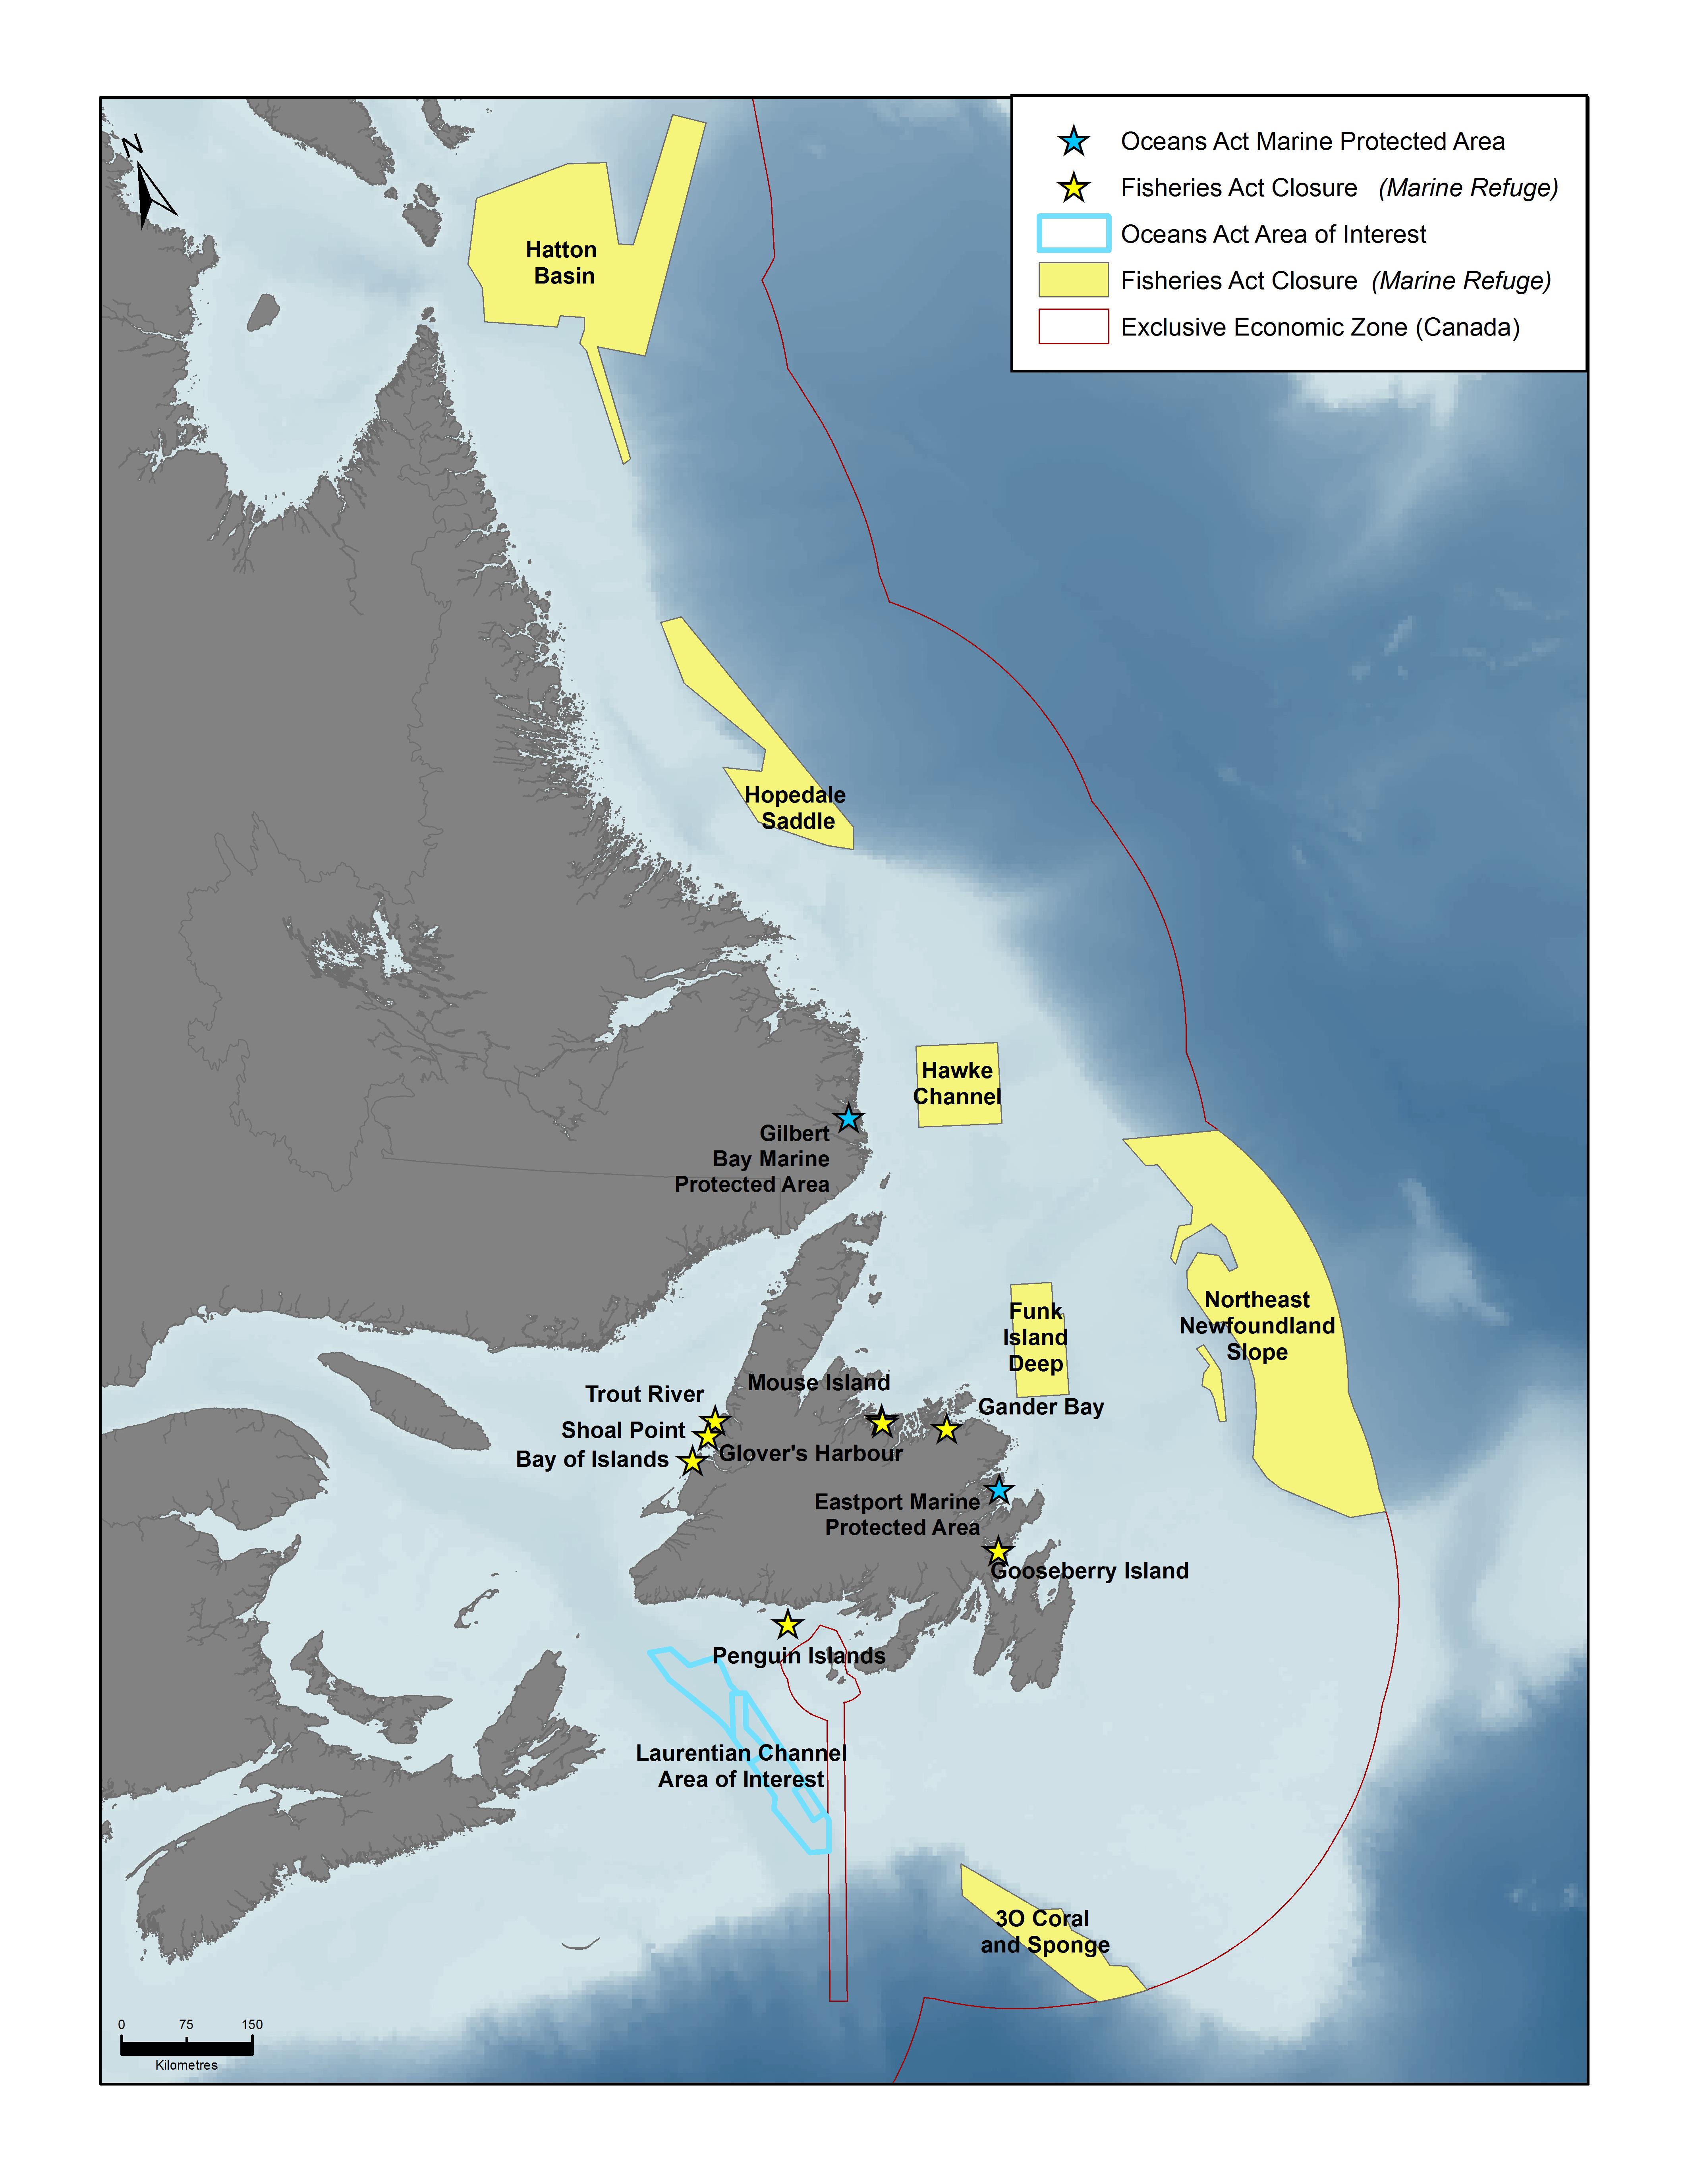 Carte des refuges, des zones de protection marine et des zones d’intérêt dans la région de Terre-Neuve et du Labrador